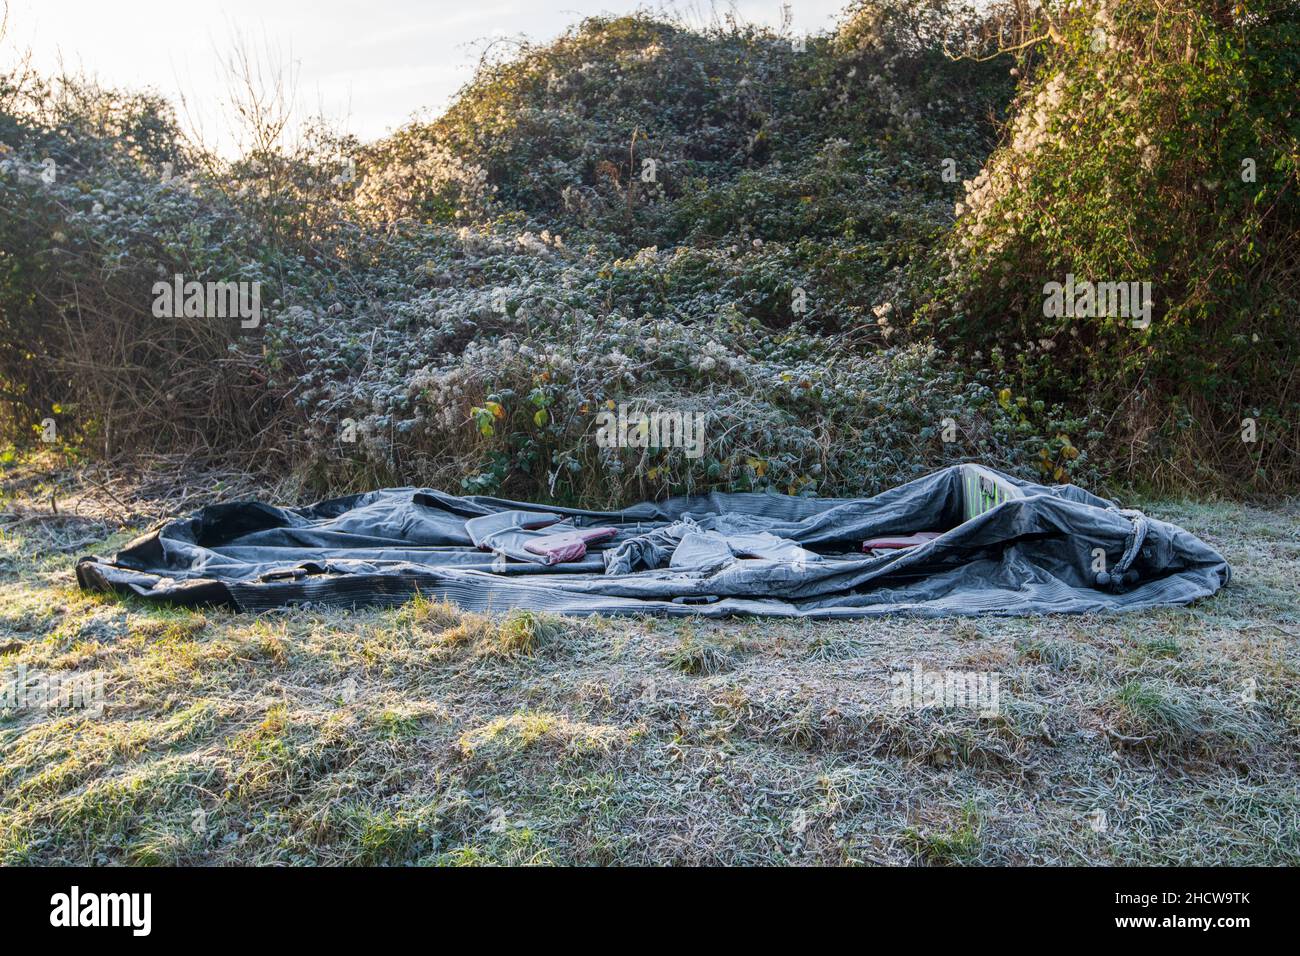 Ambleteuse, France - 22 décembre 2021 : bateau gonflable et gilet de sauvetage abandonnés par les migrants souhaitant traverser la Manche. Banque D'Images